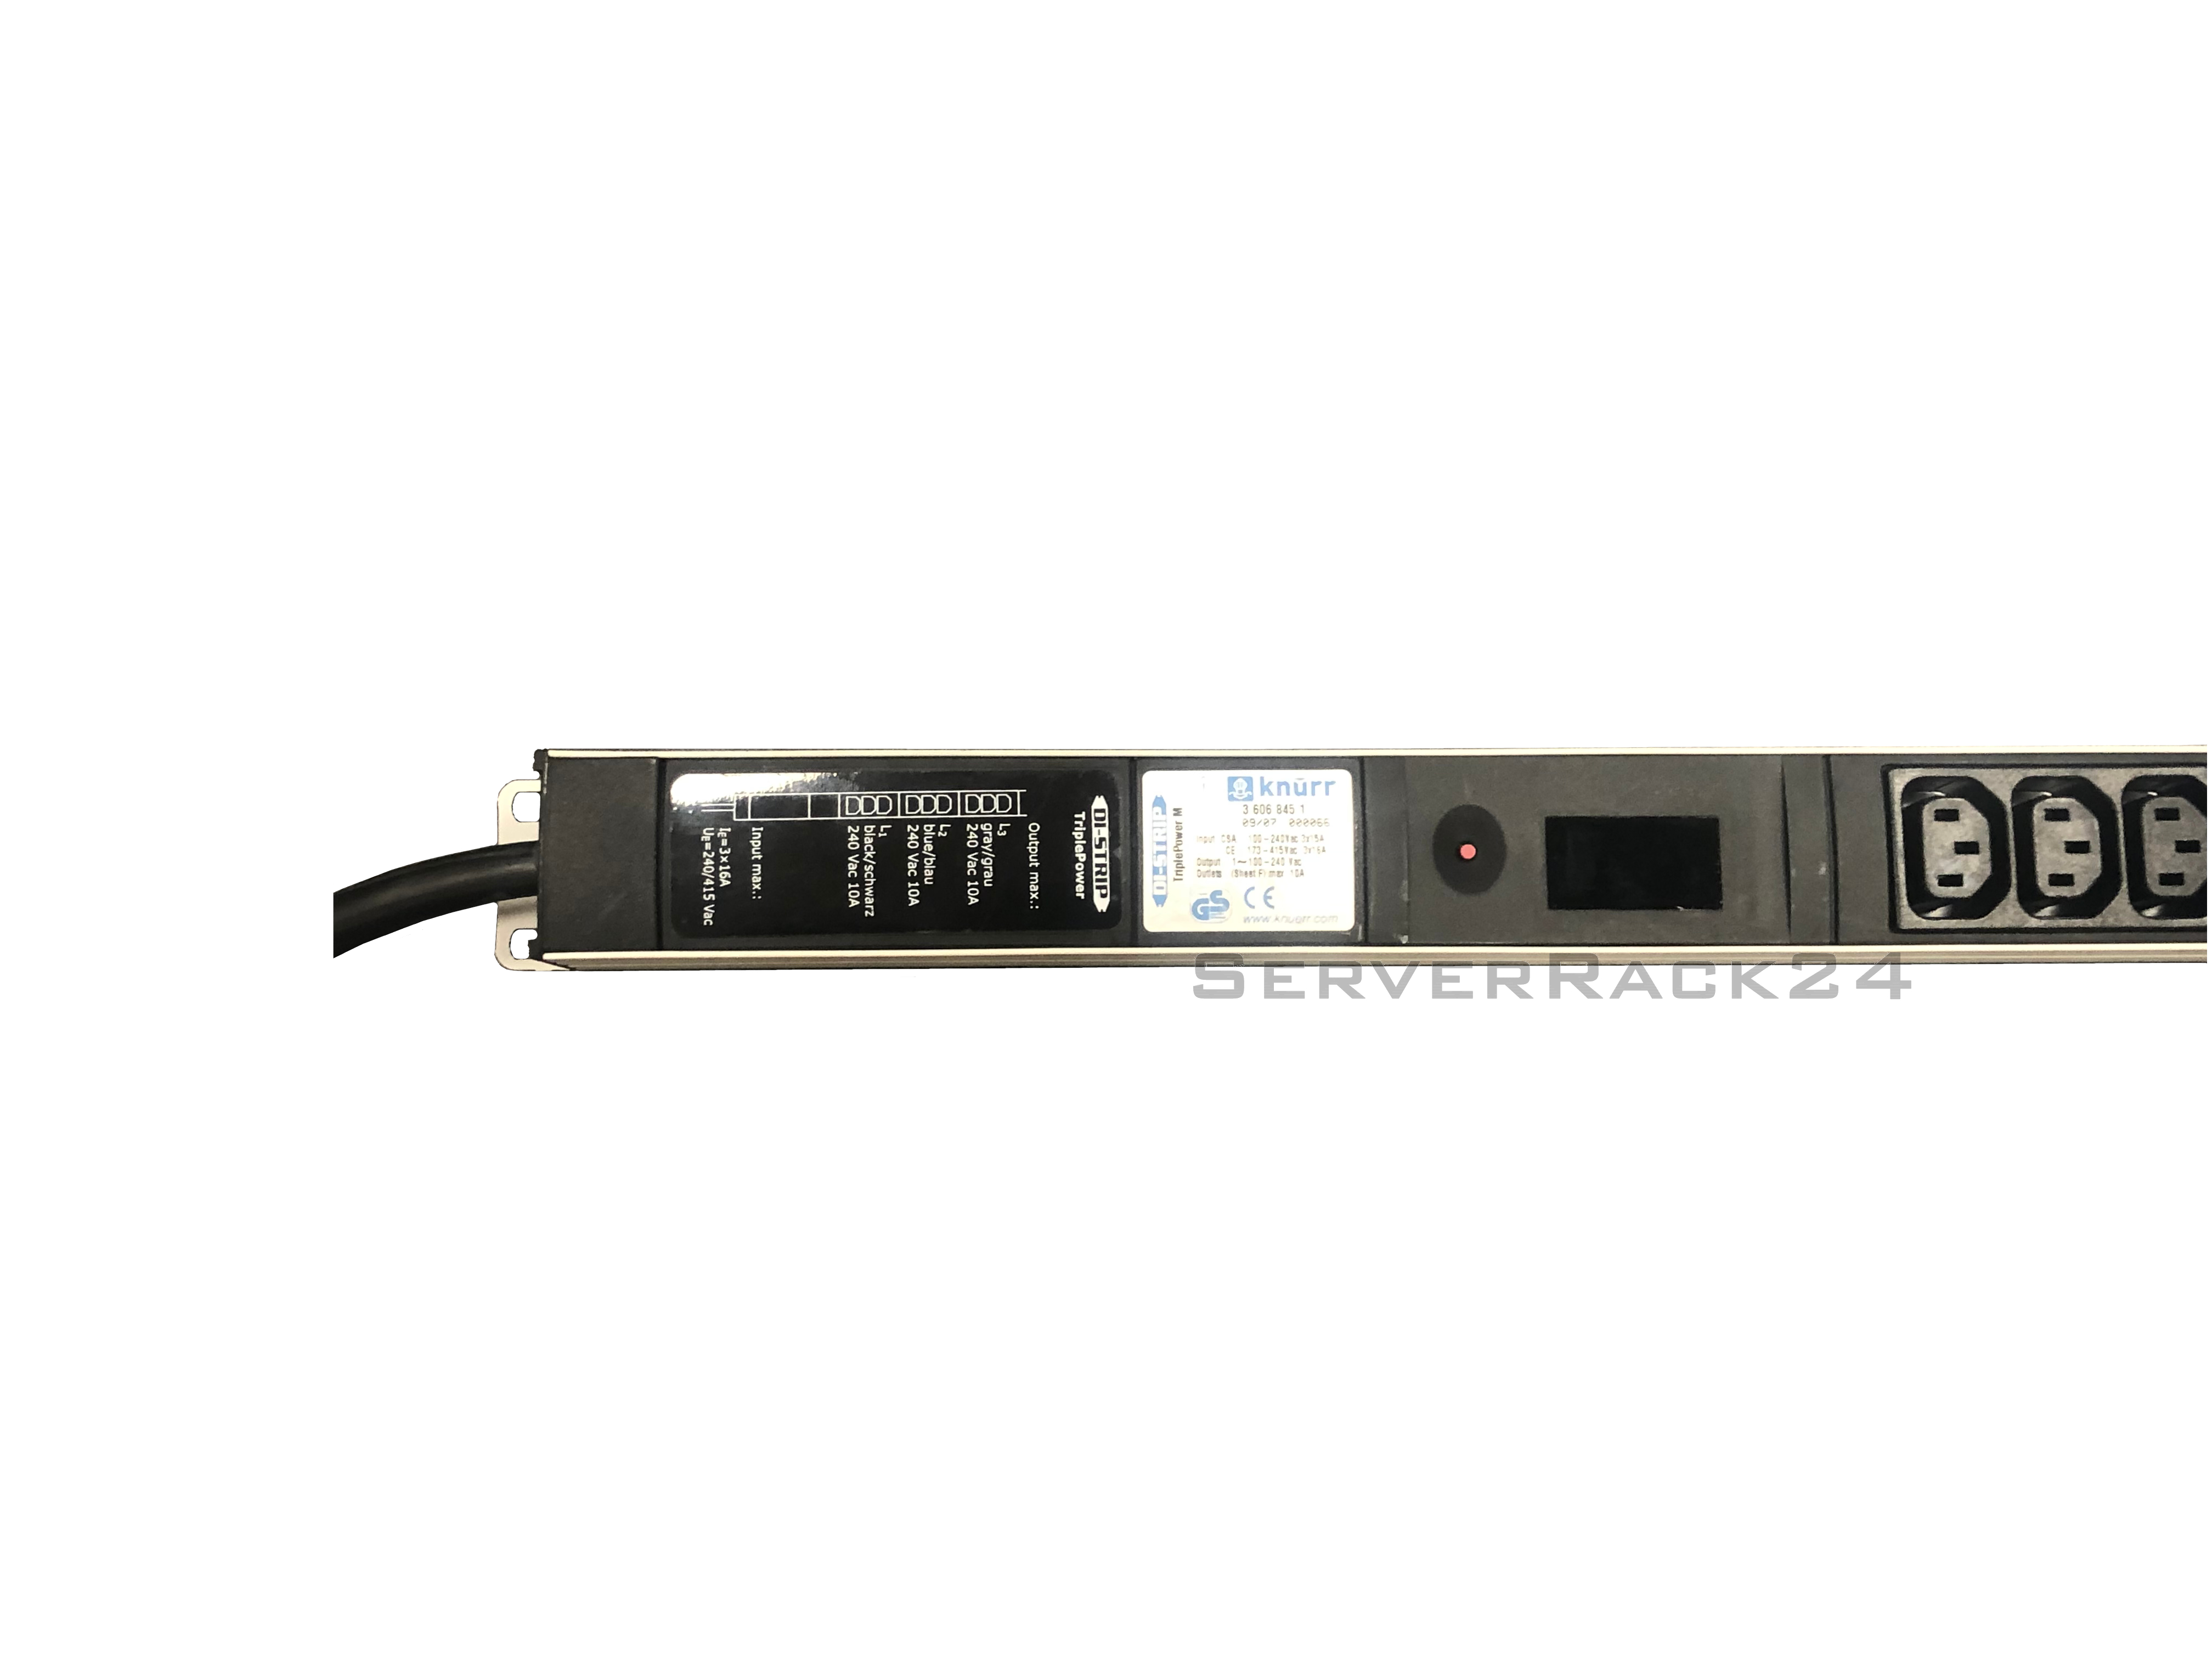 Knürr DI-STRIP TriplePower M Euro Plug-In System - Steckdosenleiste - 45 Ausgangsanschlüsse